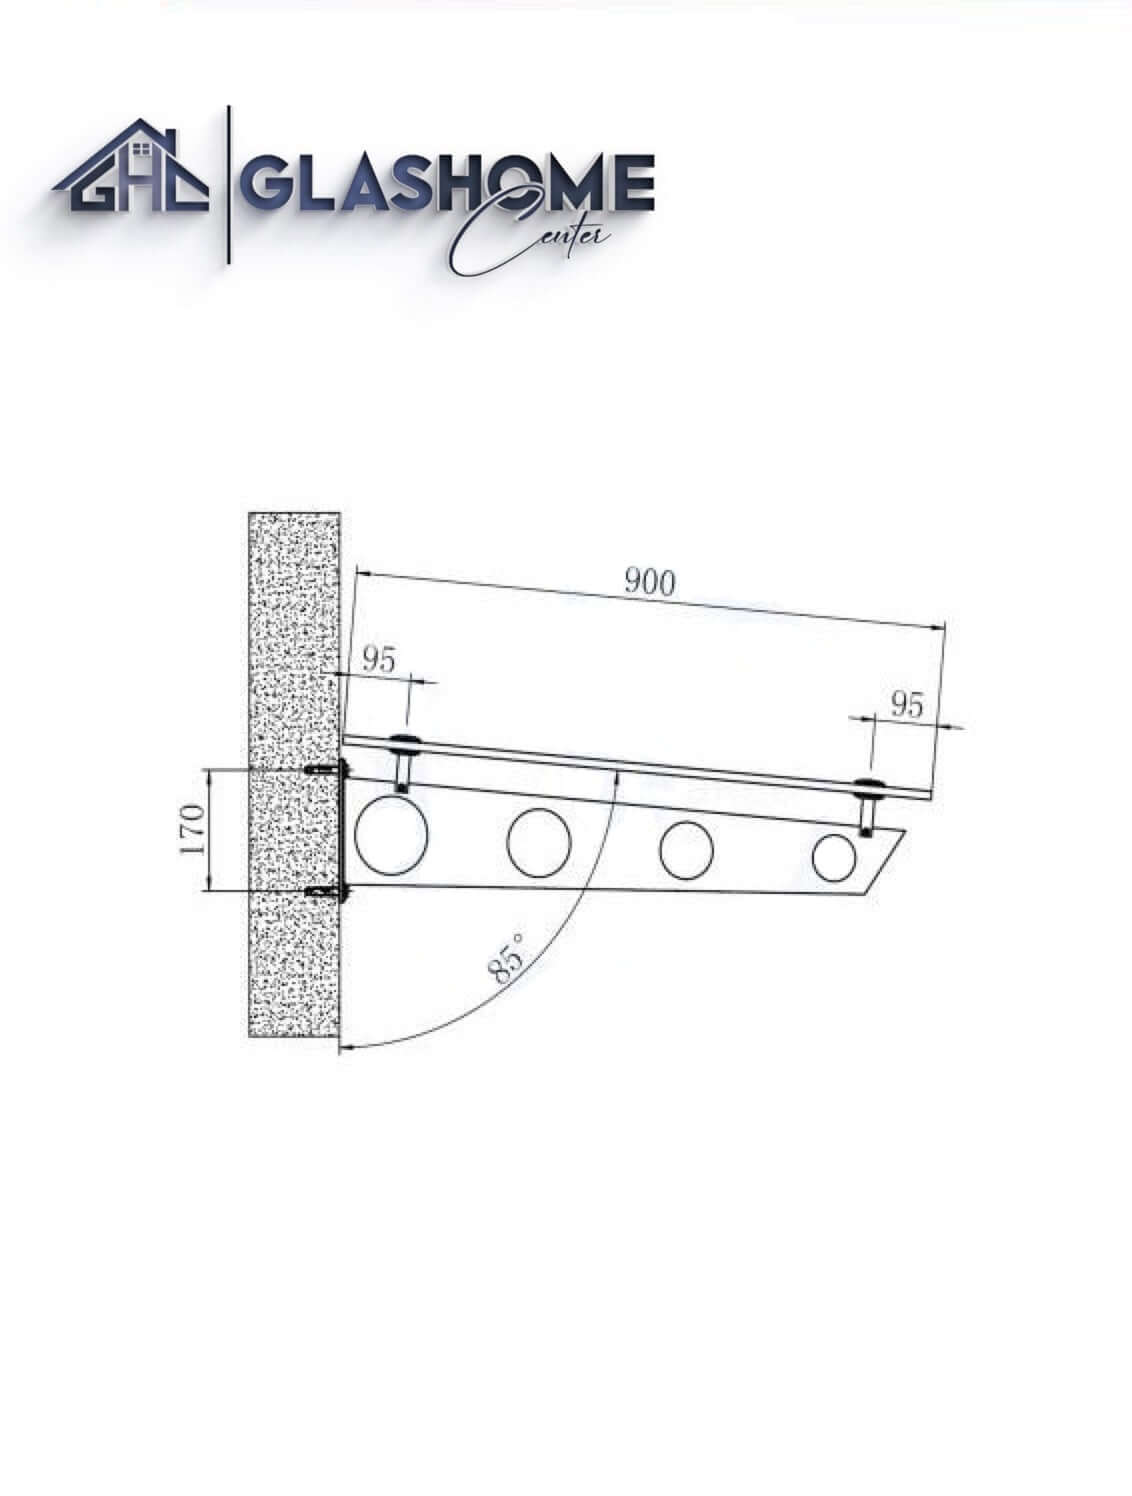 GlasHomeCenter - Glasvordach - Grauglas - 250x90cm - 13,1mm VSG - incl. 3 Edelstahlhalterungen variante "Stoccolma"